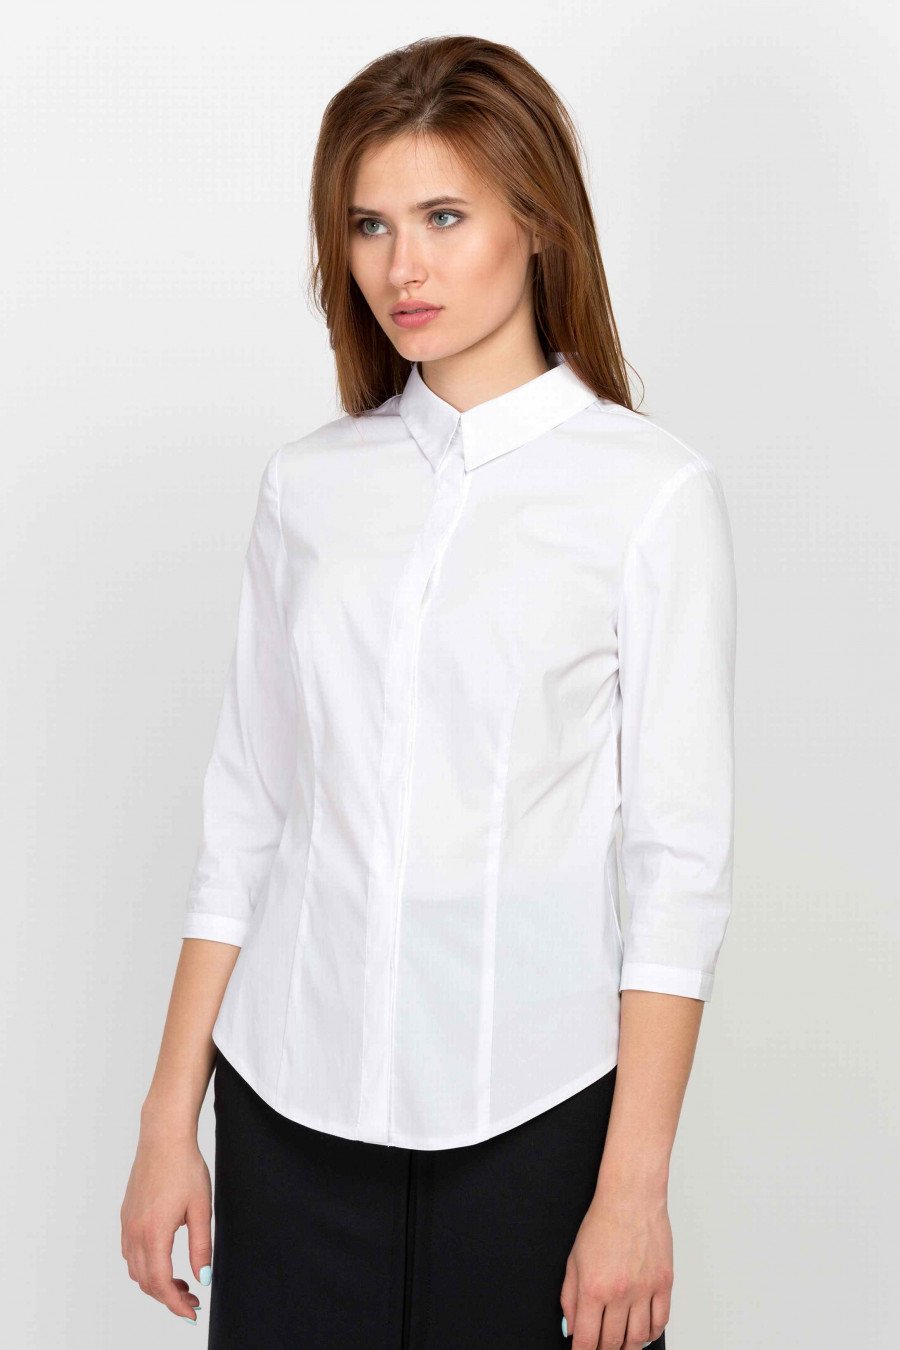 Белые офисные блузки. Белая блузка. Блузки для офиса. Белые блузки для офиса. Белая блузка женская.